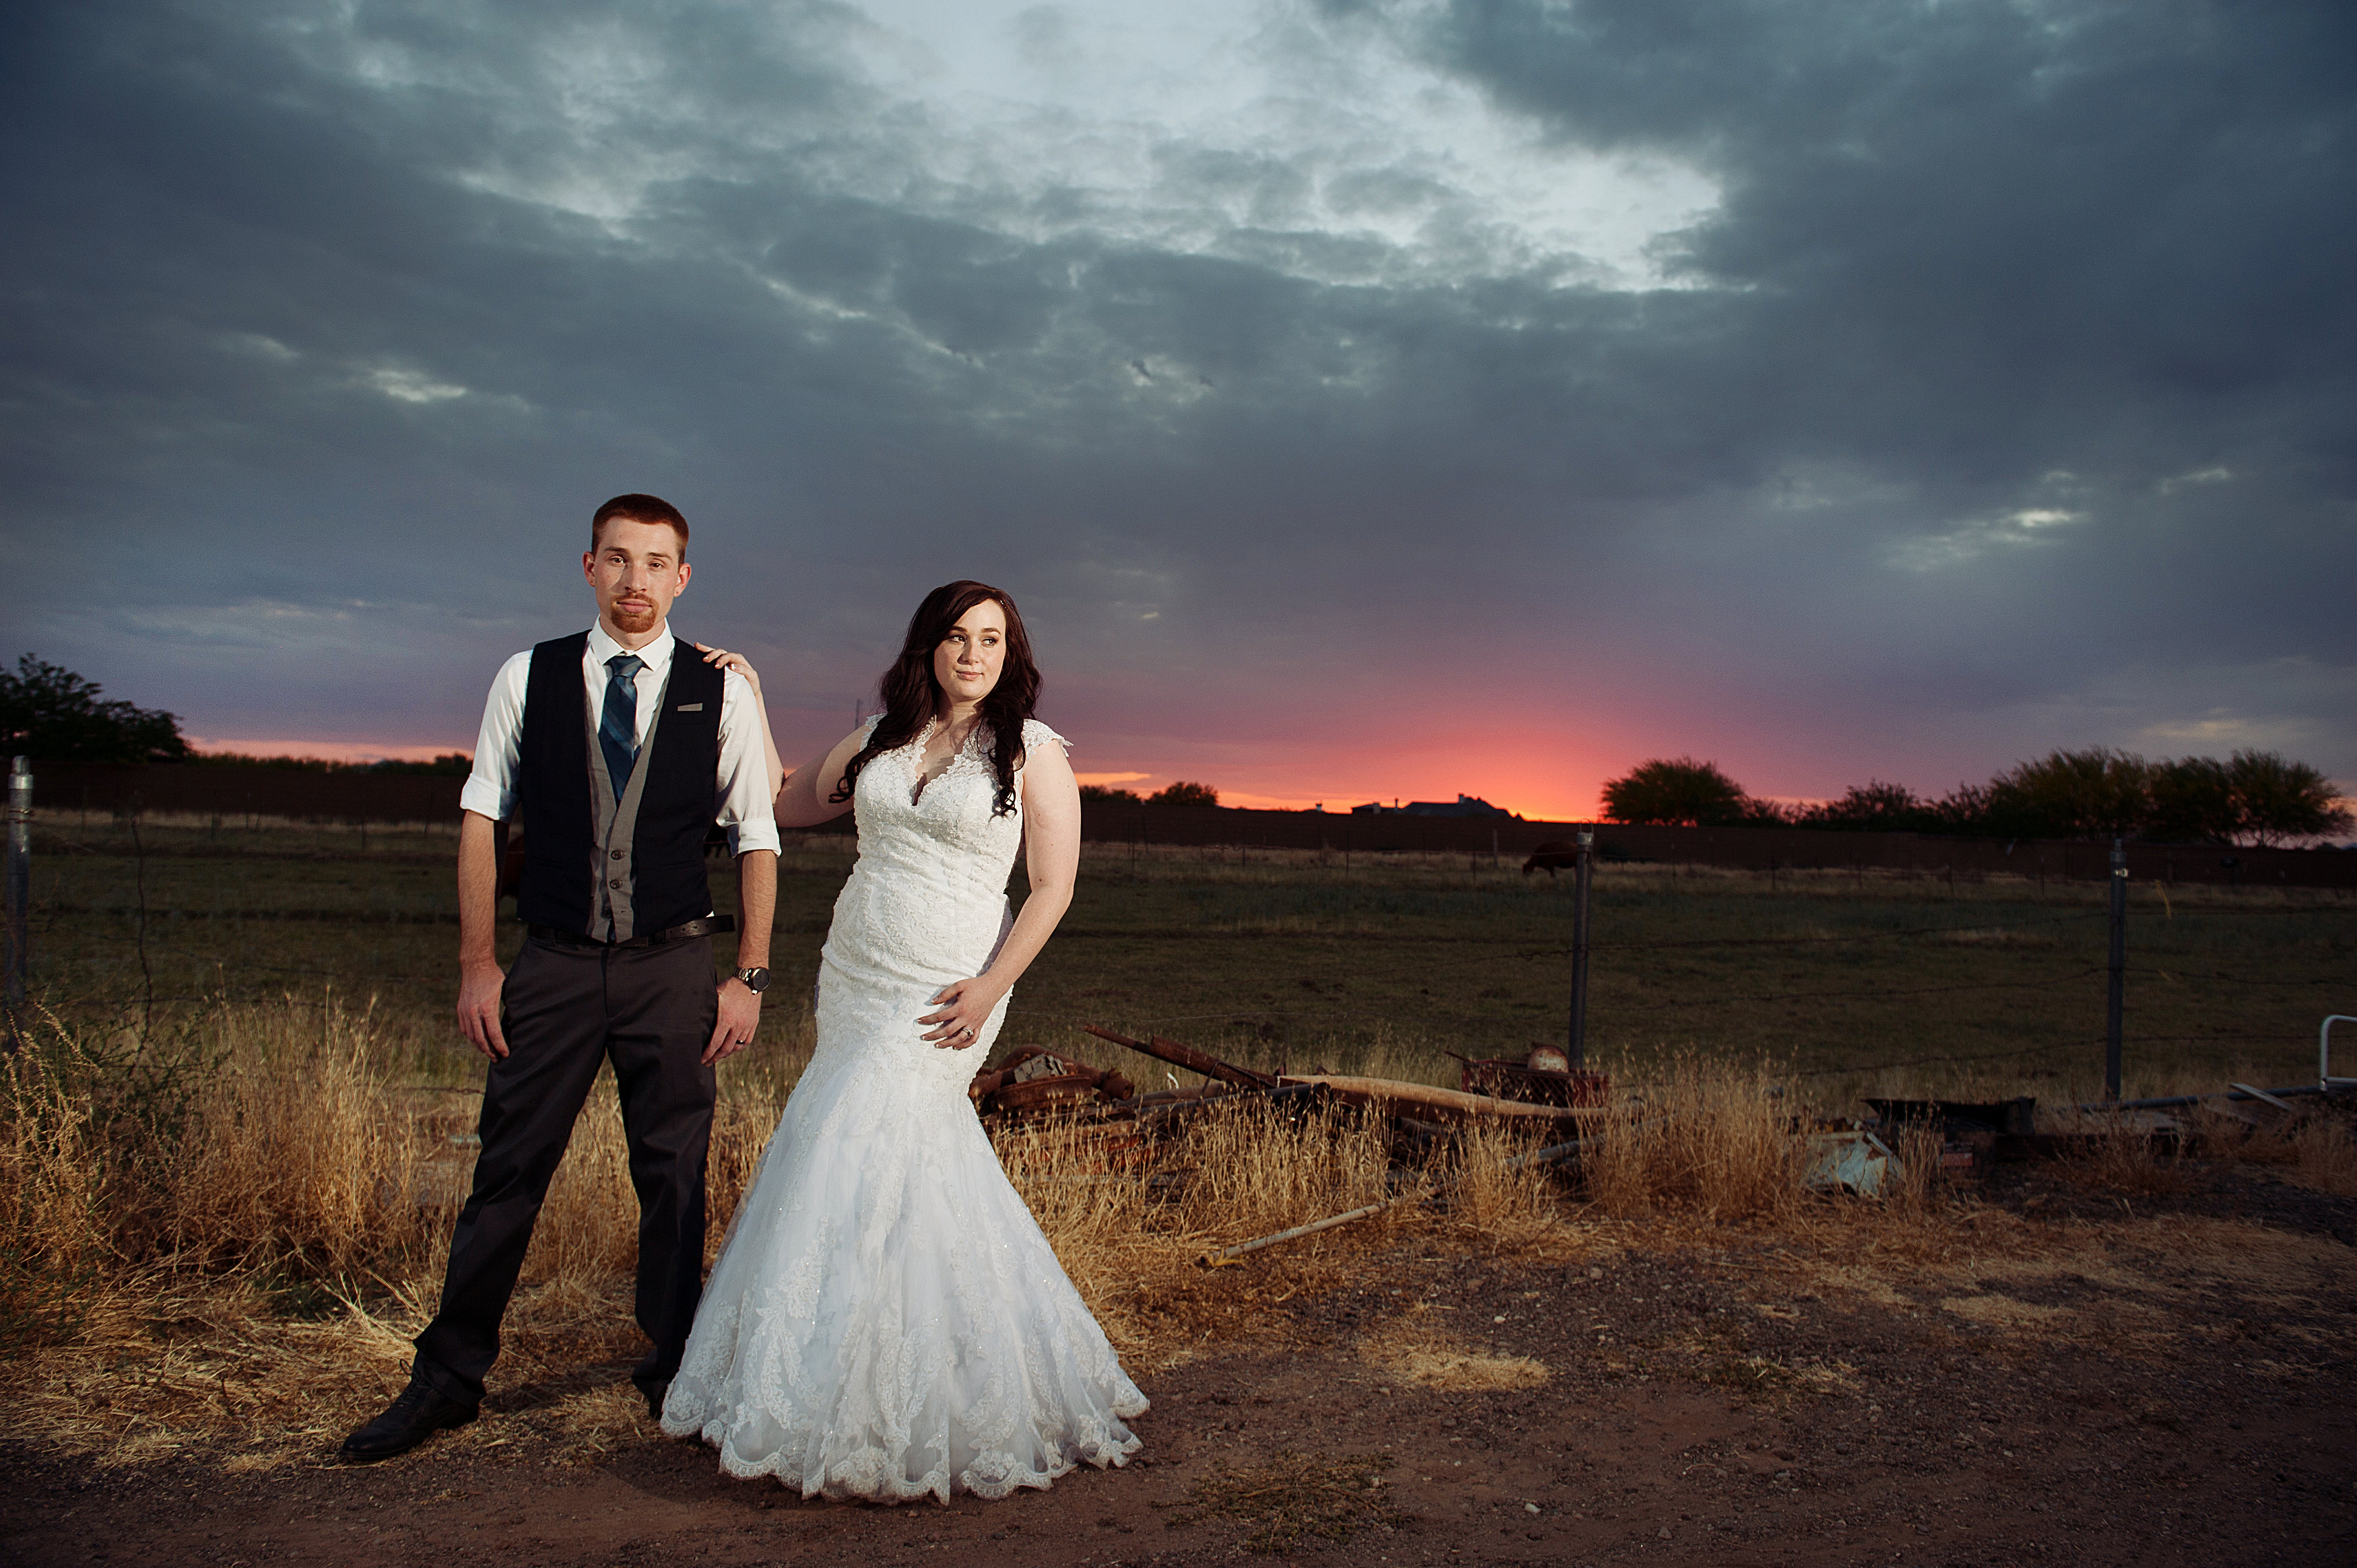 Jess & Tobias | Backyard Wedding | Phoenix, AZ